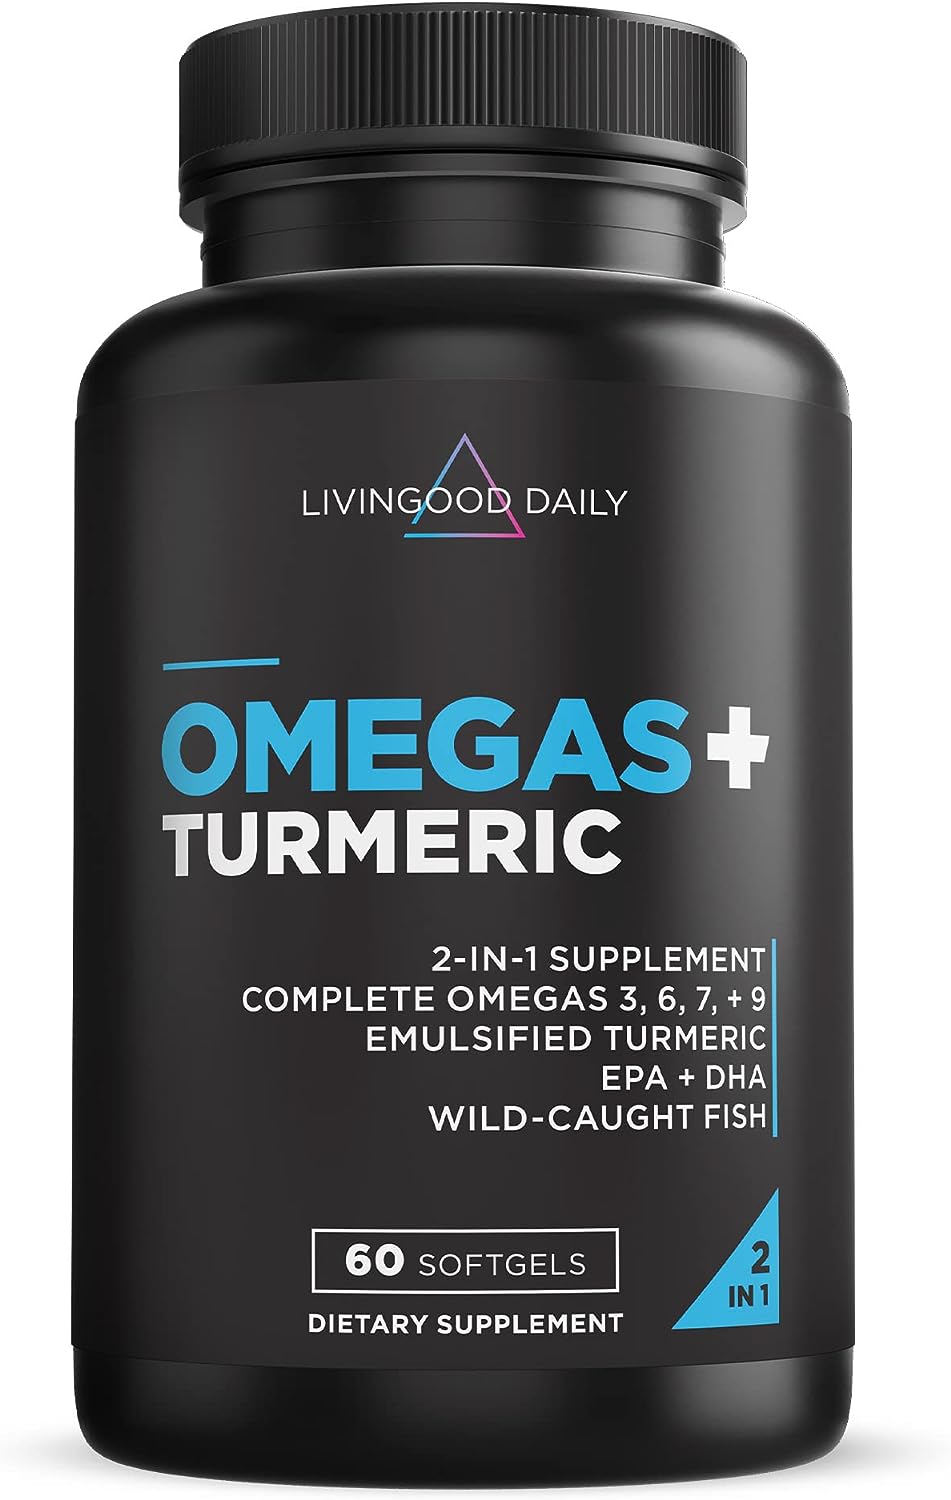 Livingood Daily Omega 3 6 7 9 Plus Turmeric Curcumin - Essential Fatty Acids Omega 3 6 9 and Omega 7